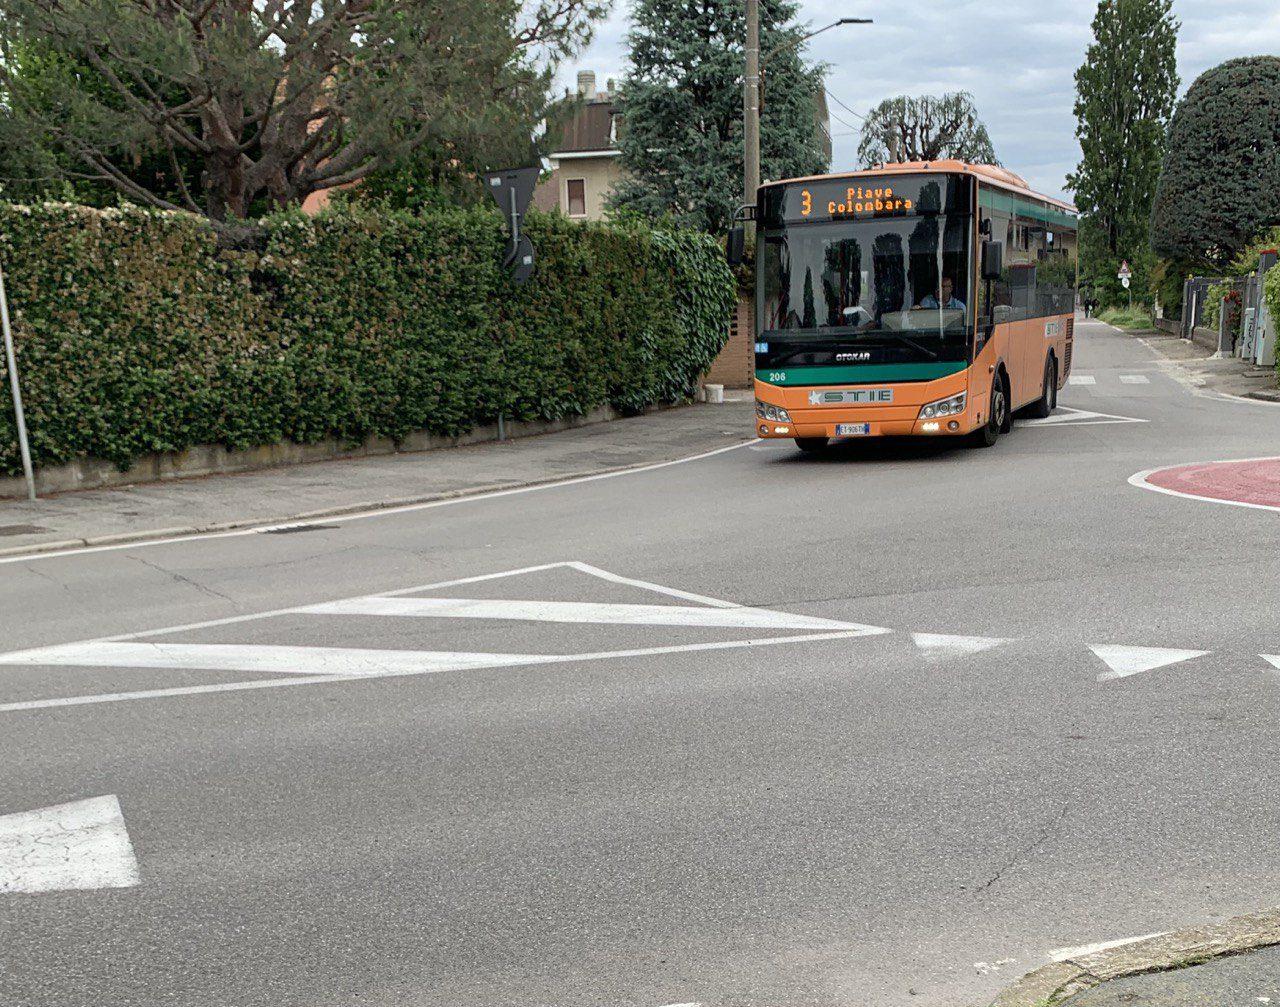 Ieri a Saronno: arrestato finto carabinieri. Aggredito autista bus. Polfer più vicina alla stazione. Basket, Saronno espugna Empoli